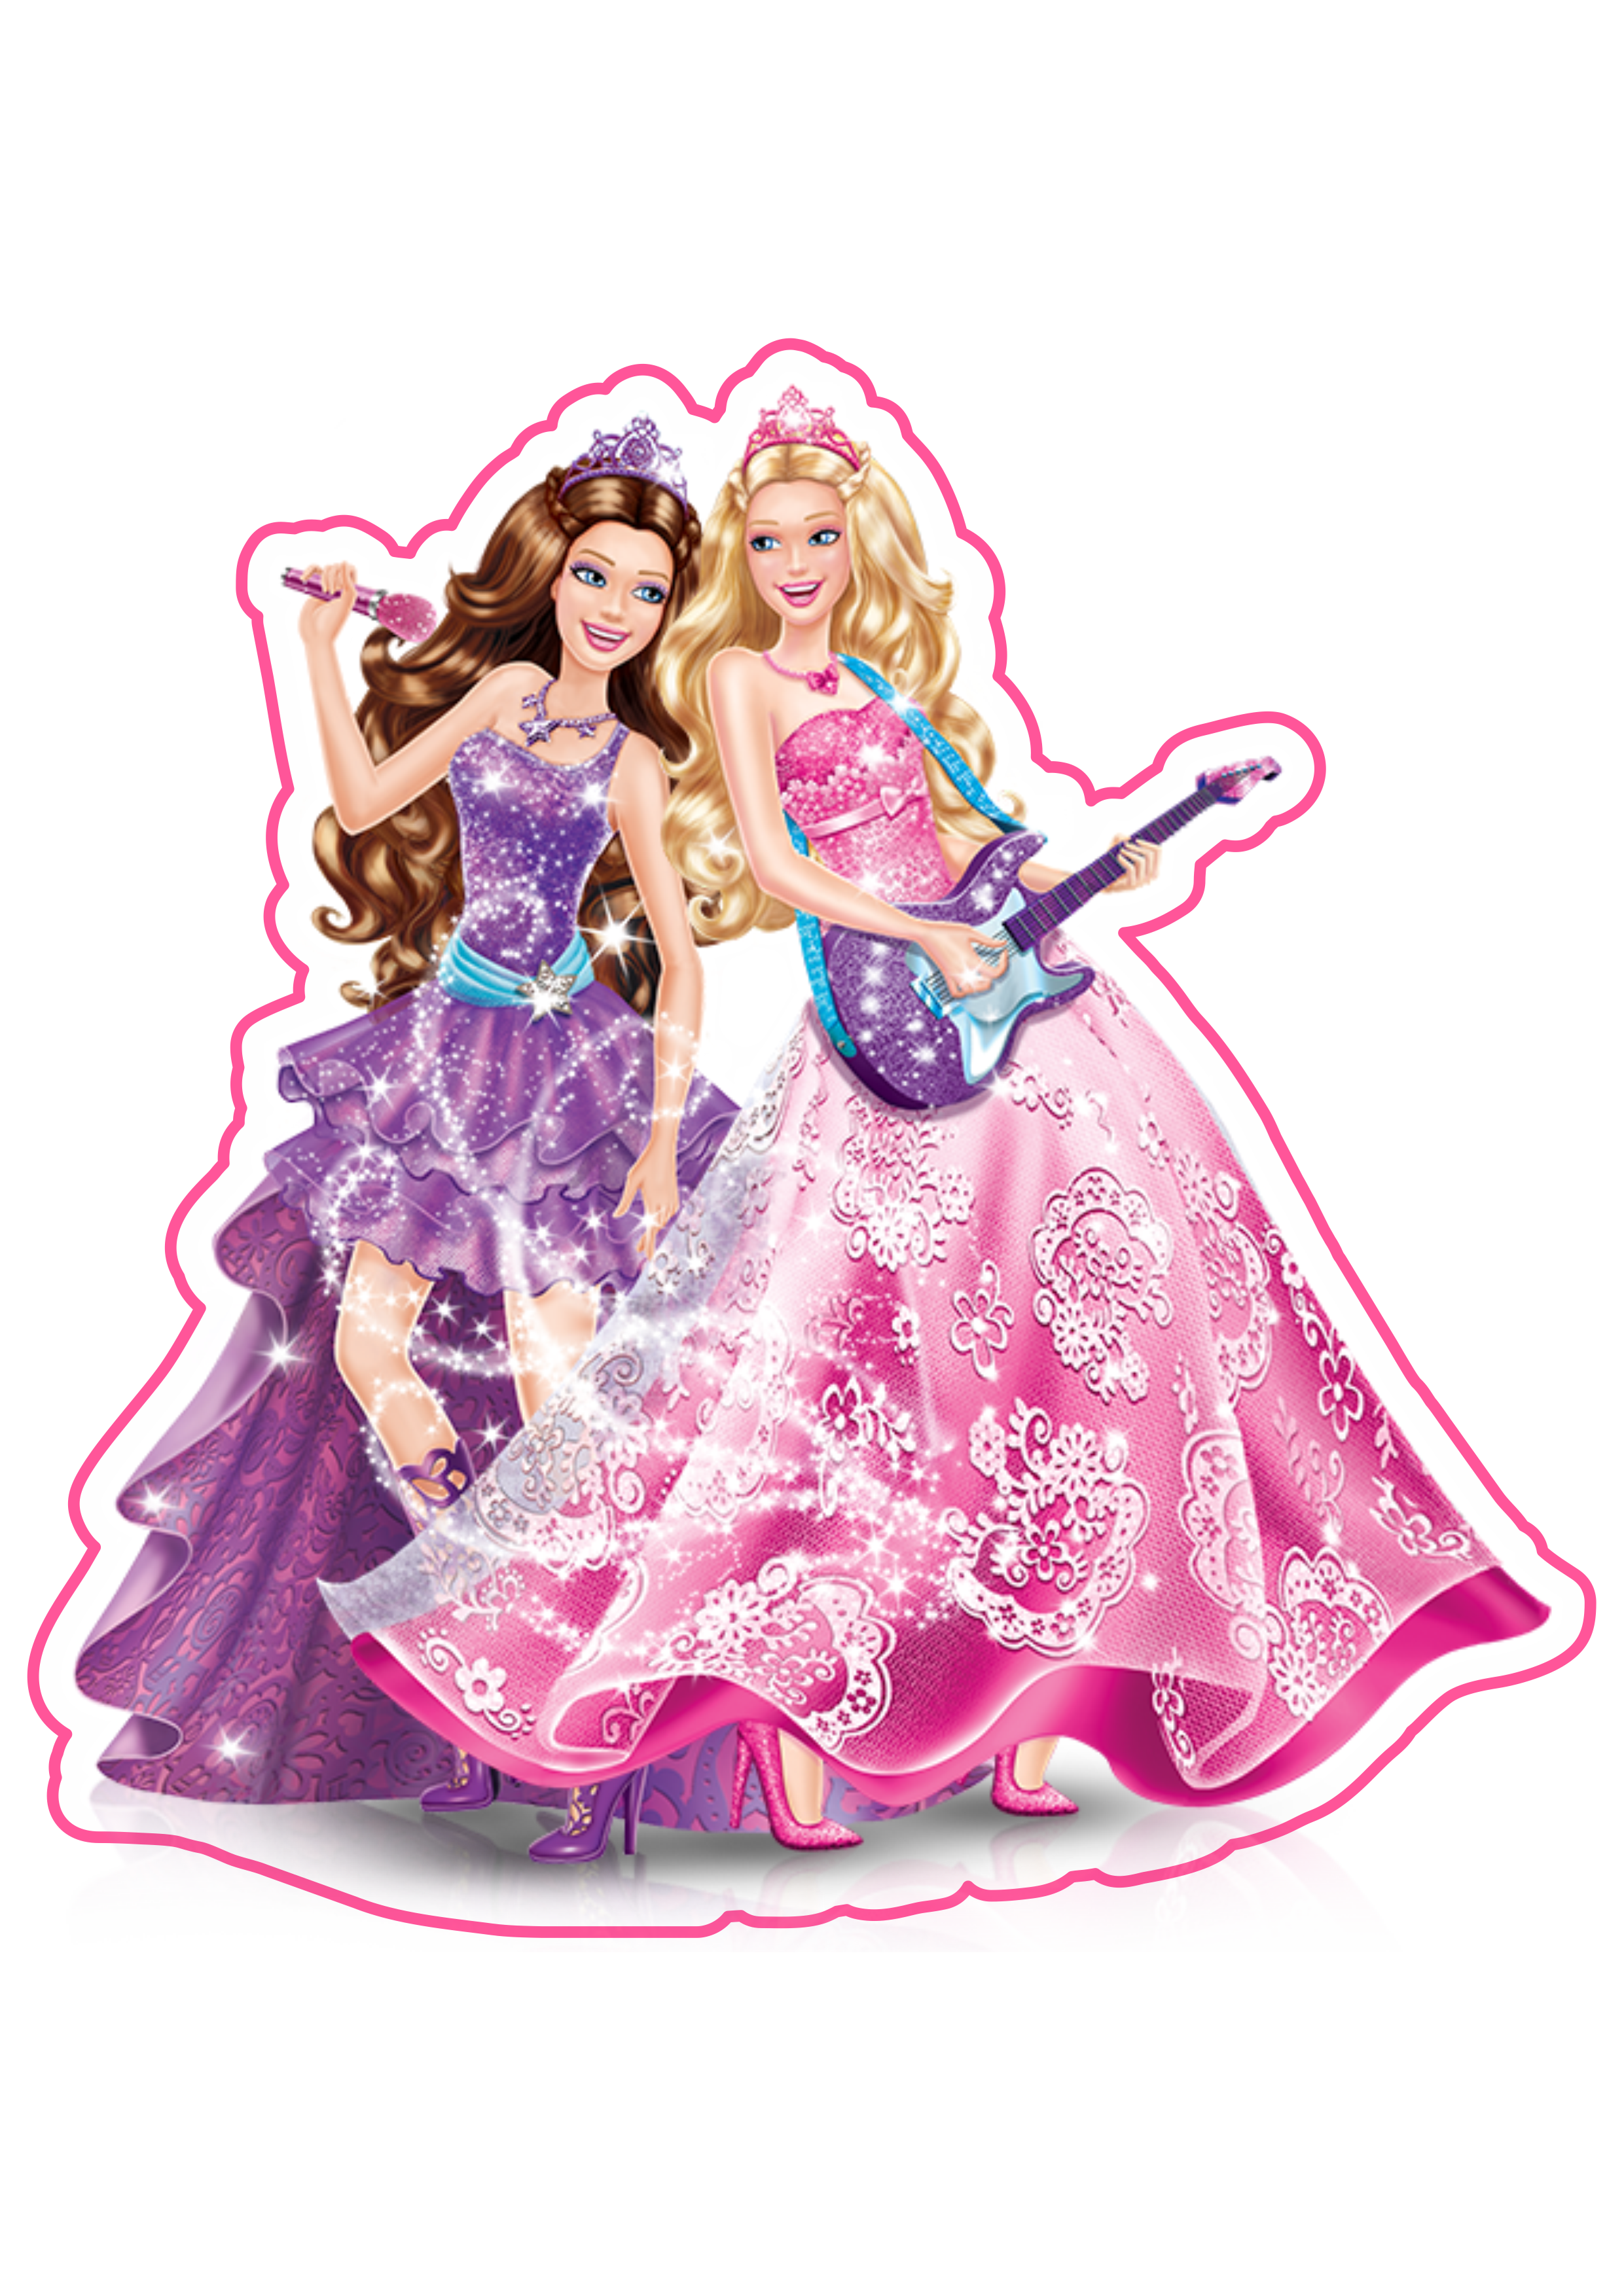 Barbie princesa popstar personagem fictício imagem grátis fundo transparente com contorno png